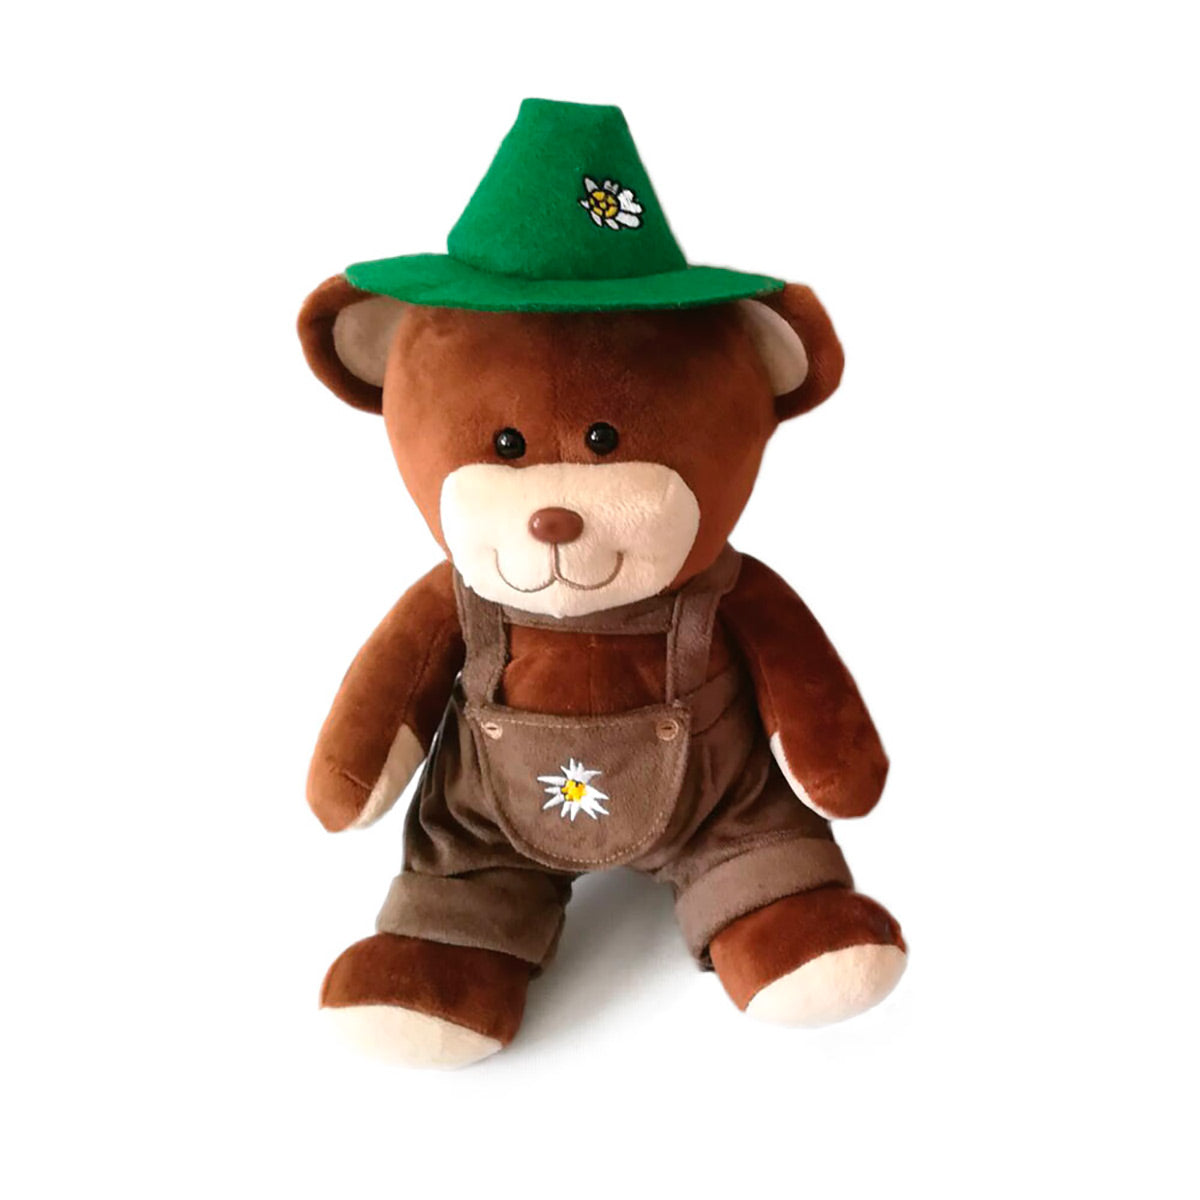 Adorable German Boy Teddy Bear with a Green Archer Hat ...